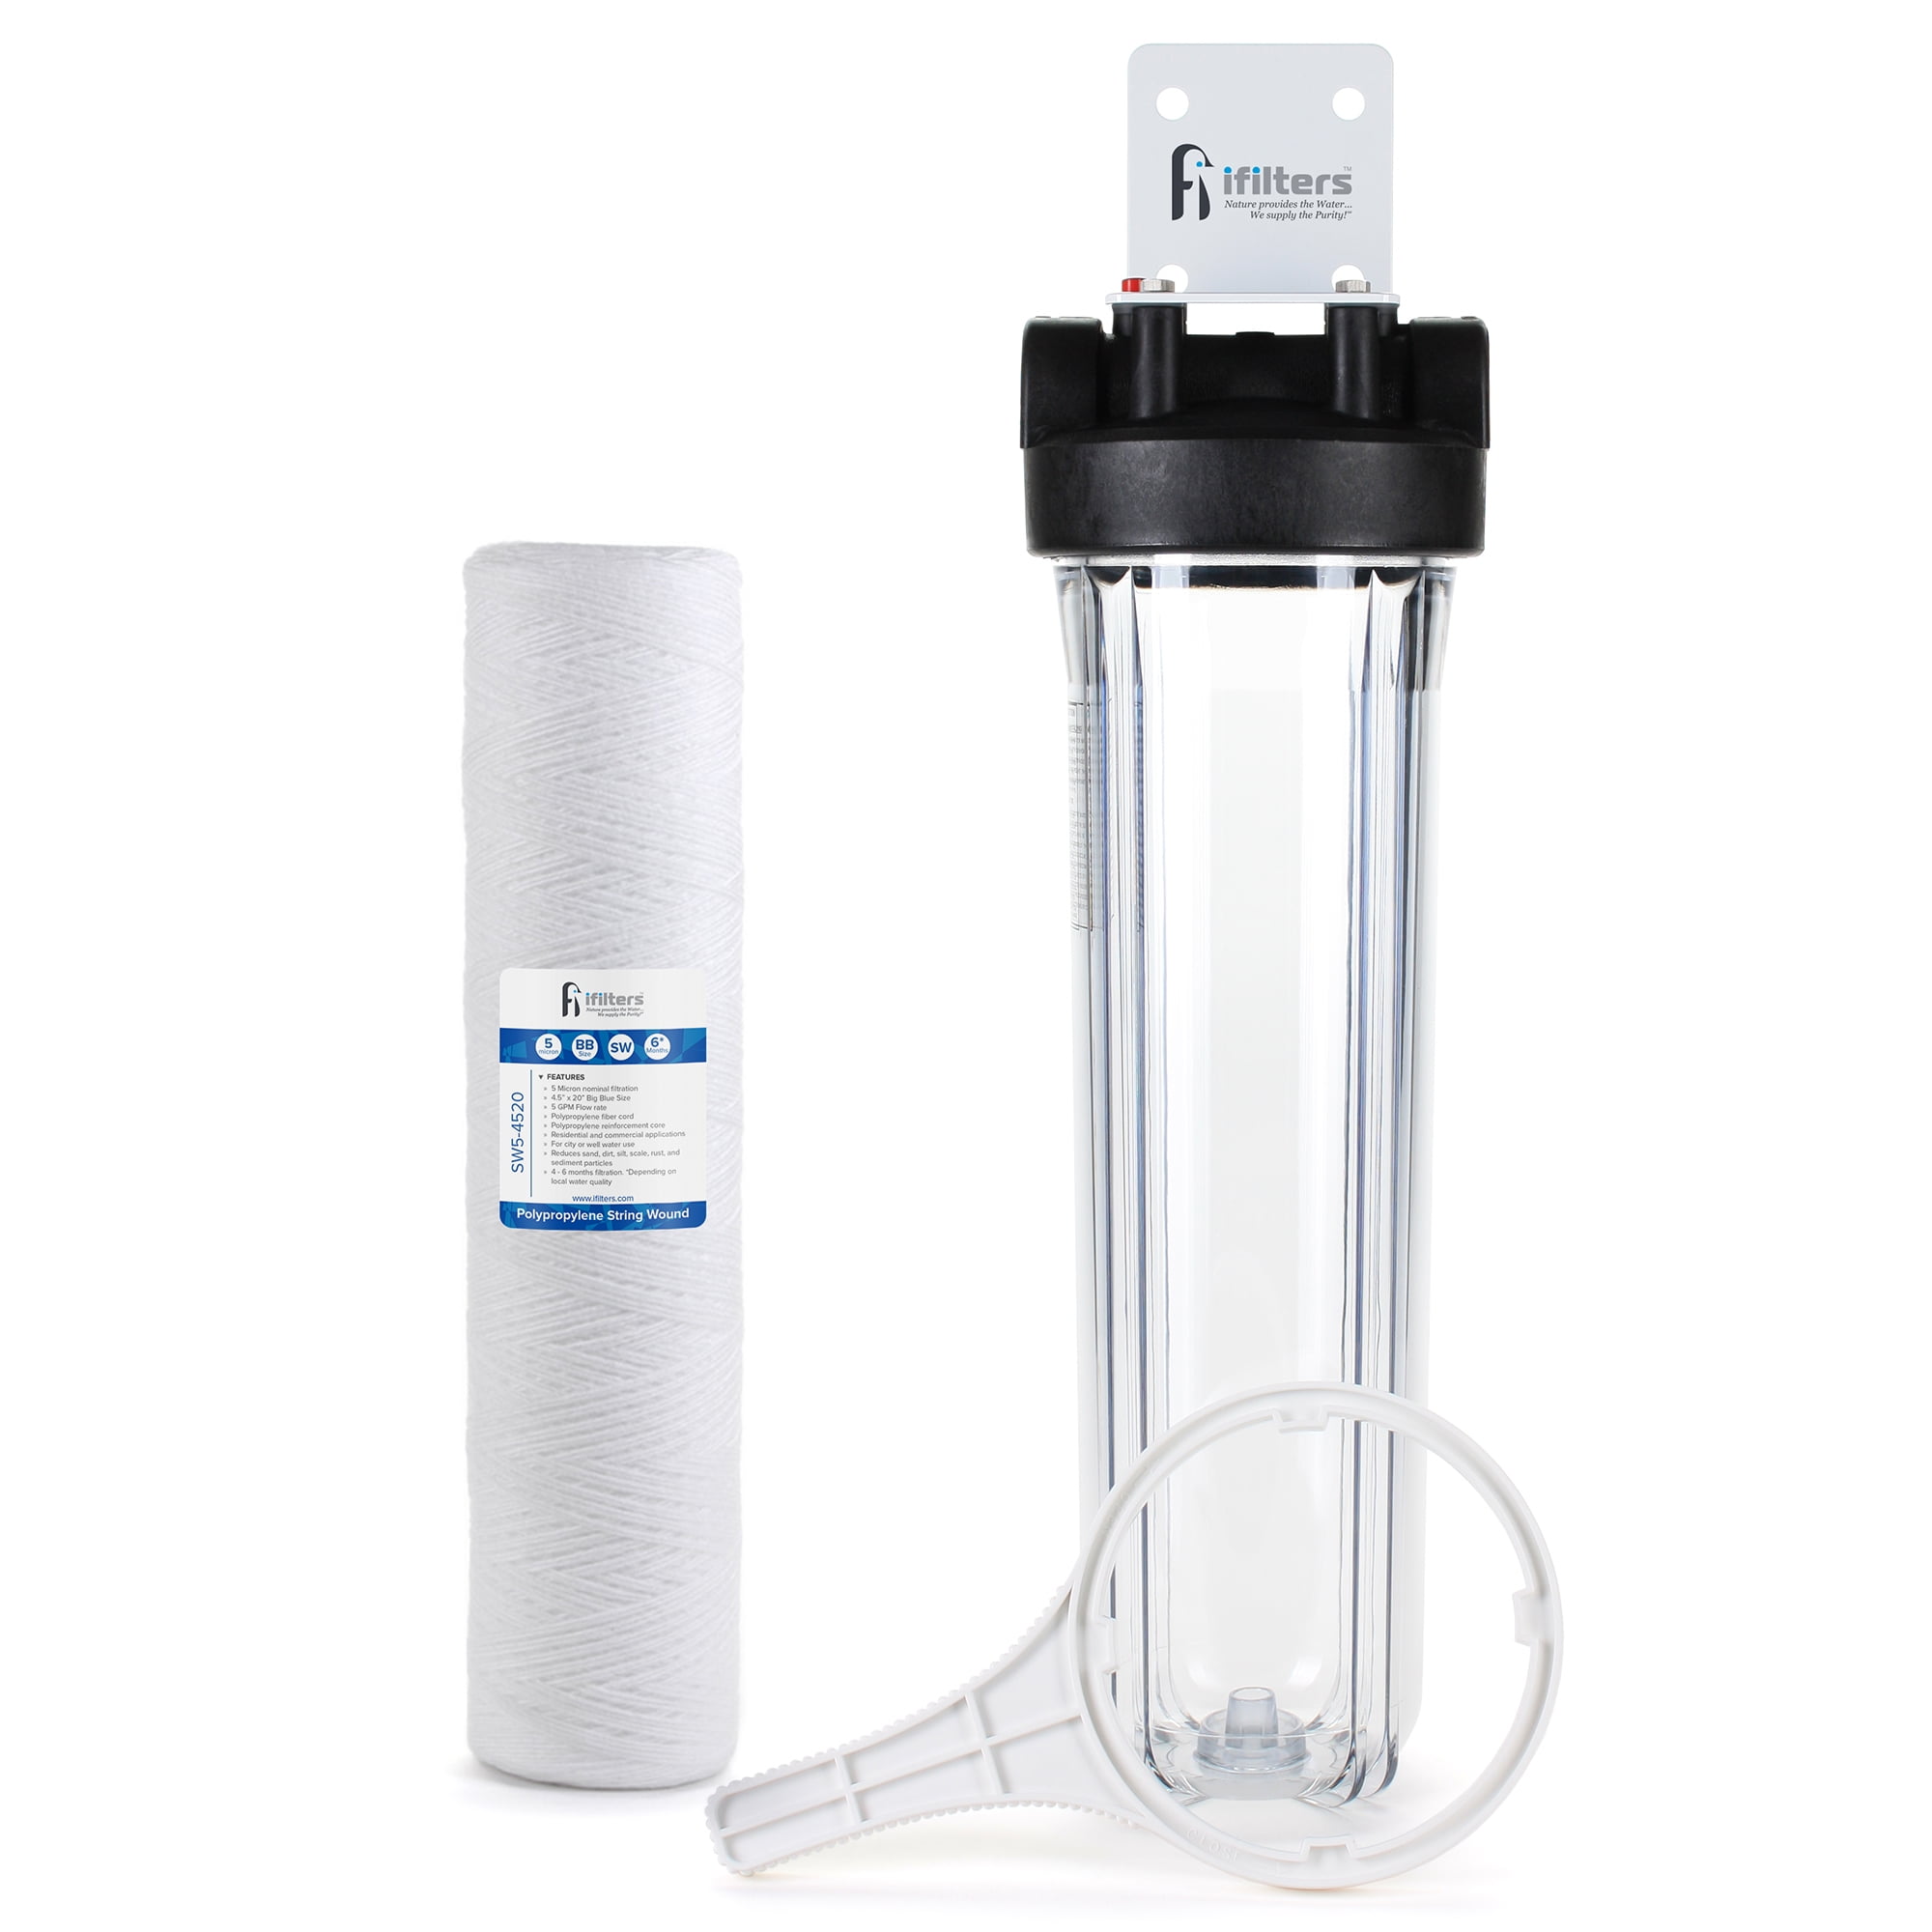 20 μm Commercial Hydroponics 20" Sediment Water Filter for Whole House RO 